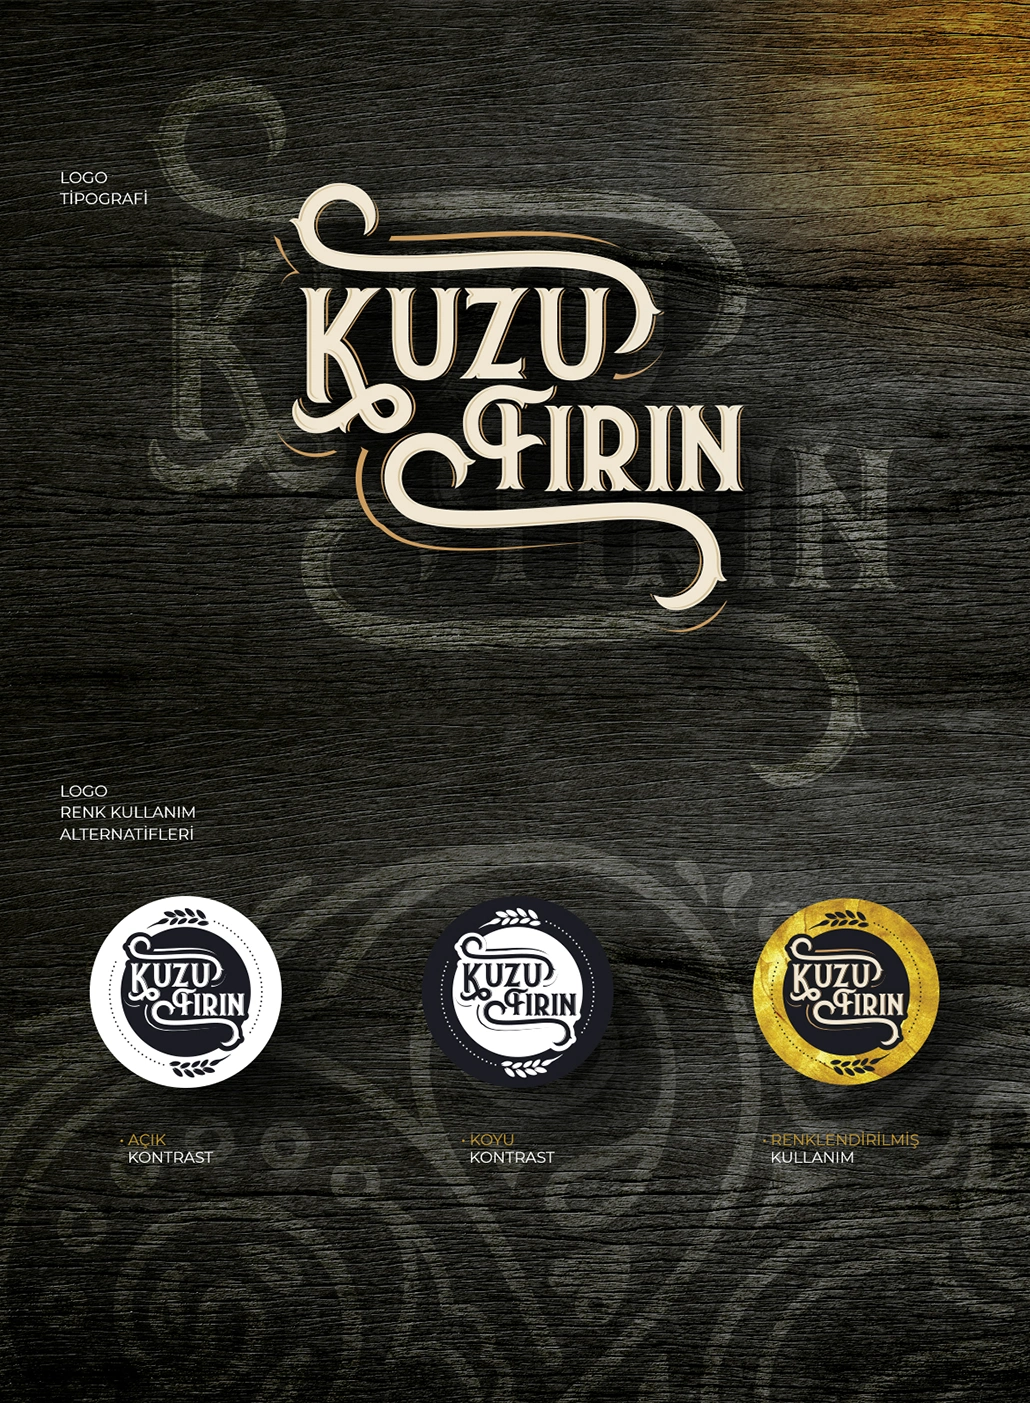 Kuzu Fırın Pastane ve Unlu Mamülleri Logo / Tipografi ve Renk Seçenekleri